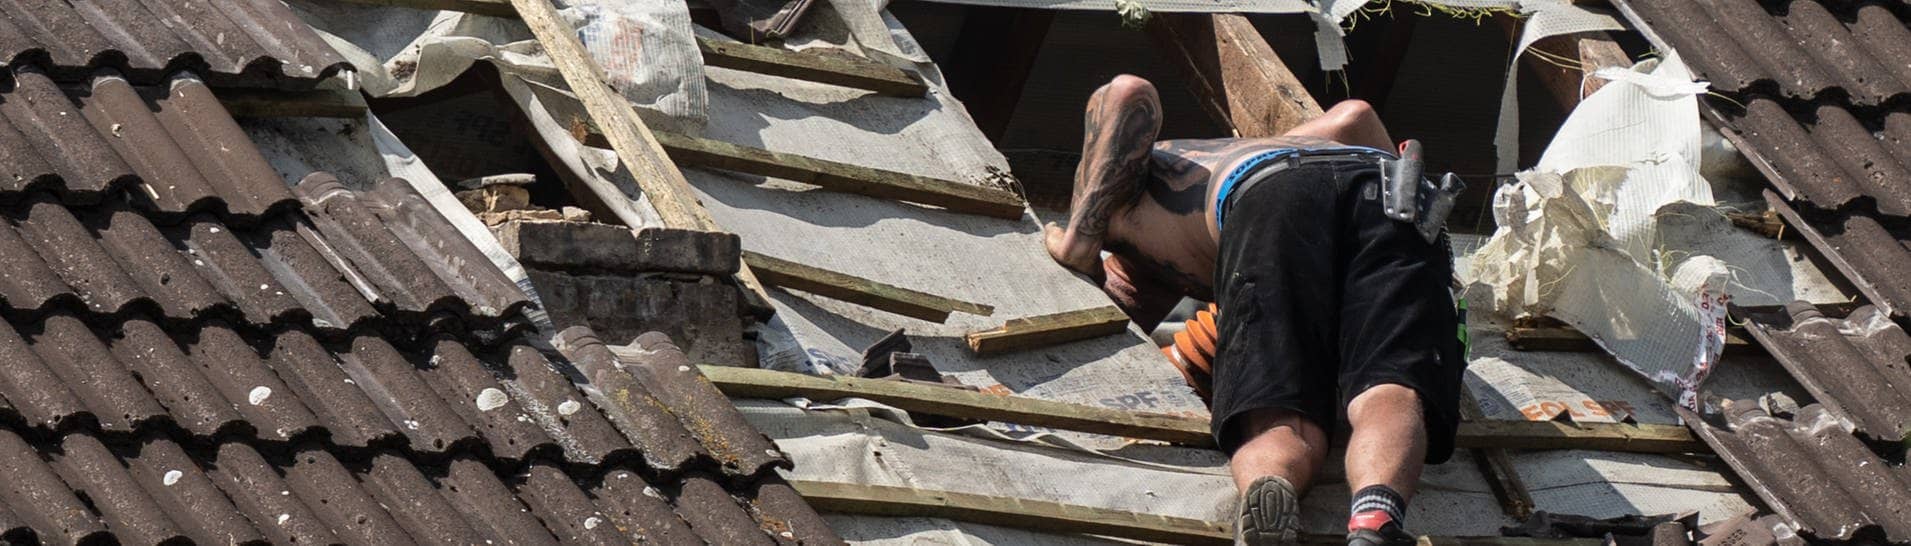 Dachdeckermeisterin verteidigt Azubi gegenüber Kundin. Auf dem Bild ist zu sehen: Ein Mitarbeiter eines Dachdeckerunternehmens schaut in ein großes Loch in einerm Dach. (Symbolbild)